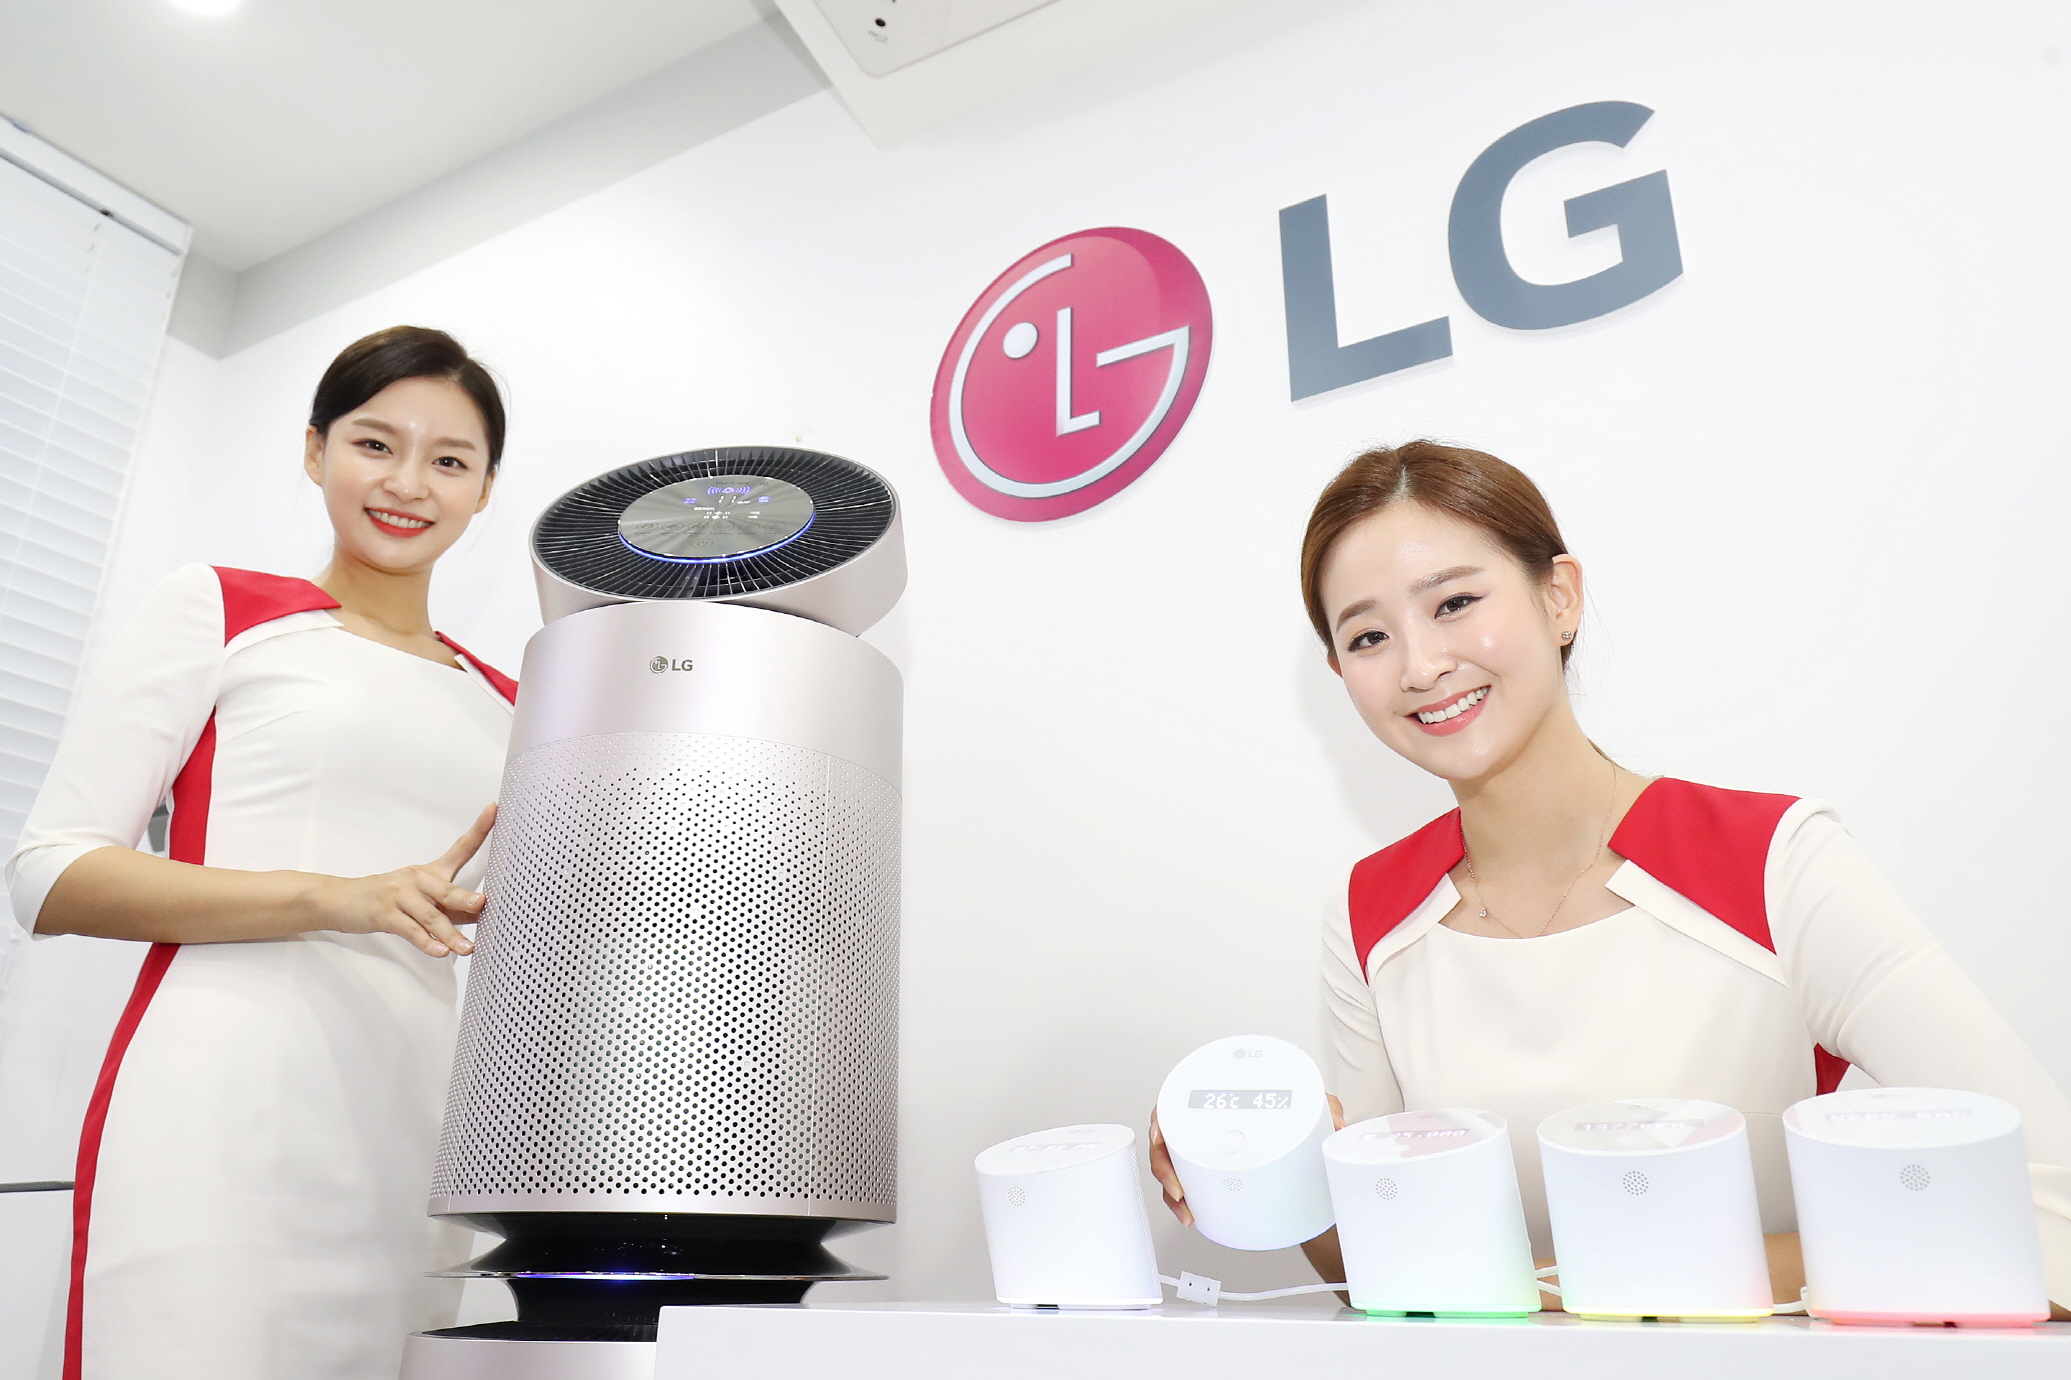  LG전자가 18일부터 20일까지 서울 삼성동 코엑스에서 열리는 제1회 미세먼지 및 공기산업박람회 '에어 페어(Air Fair) 2018'에 참가, 공기질 관리 토털 솔루션을 선보인다. LG전자는 이번 전시회에서 공기질을 관리하는 스마트 기기 ‘LG 센서허브’도 처음 공개했다. 이 제품은 디스플레이와 LED조명을 통해 실내 공기질 정보와 전력사용량을 실시간으로 보여주고 스마트폰 앱과 연동해 에어컨, 공기청정기, 제습기 등 LG 스마트 가전을 제어할 수 있다. 또, 실내 환경에 대한 종합적인 리포트도 제공한다.